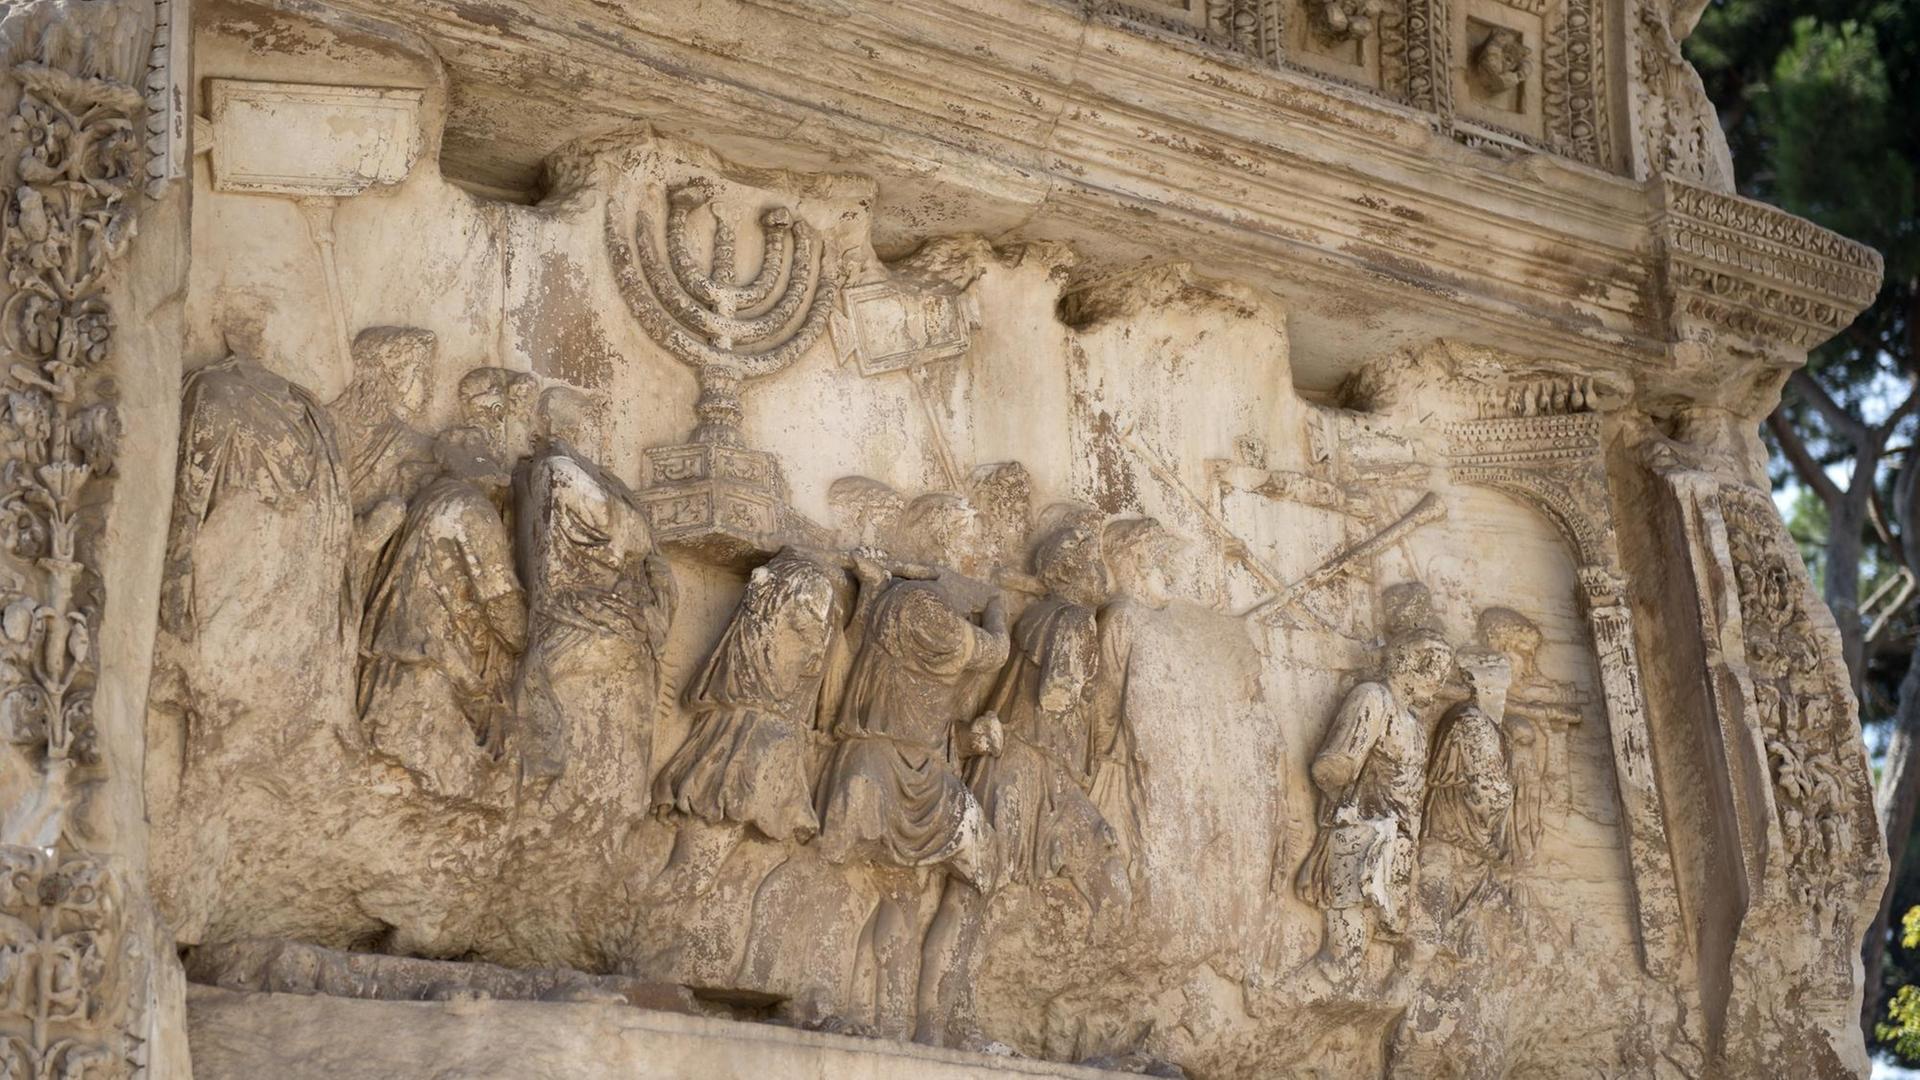 Darstellung des römischen Triumphzuges in der Innenwand des Titusbogens in Rom. Zu sehen sind römische Soldaten, jüdische Sklaven und die goldene Menora.